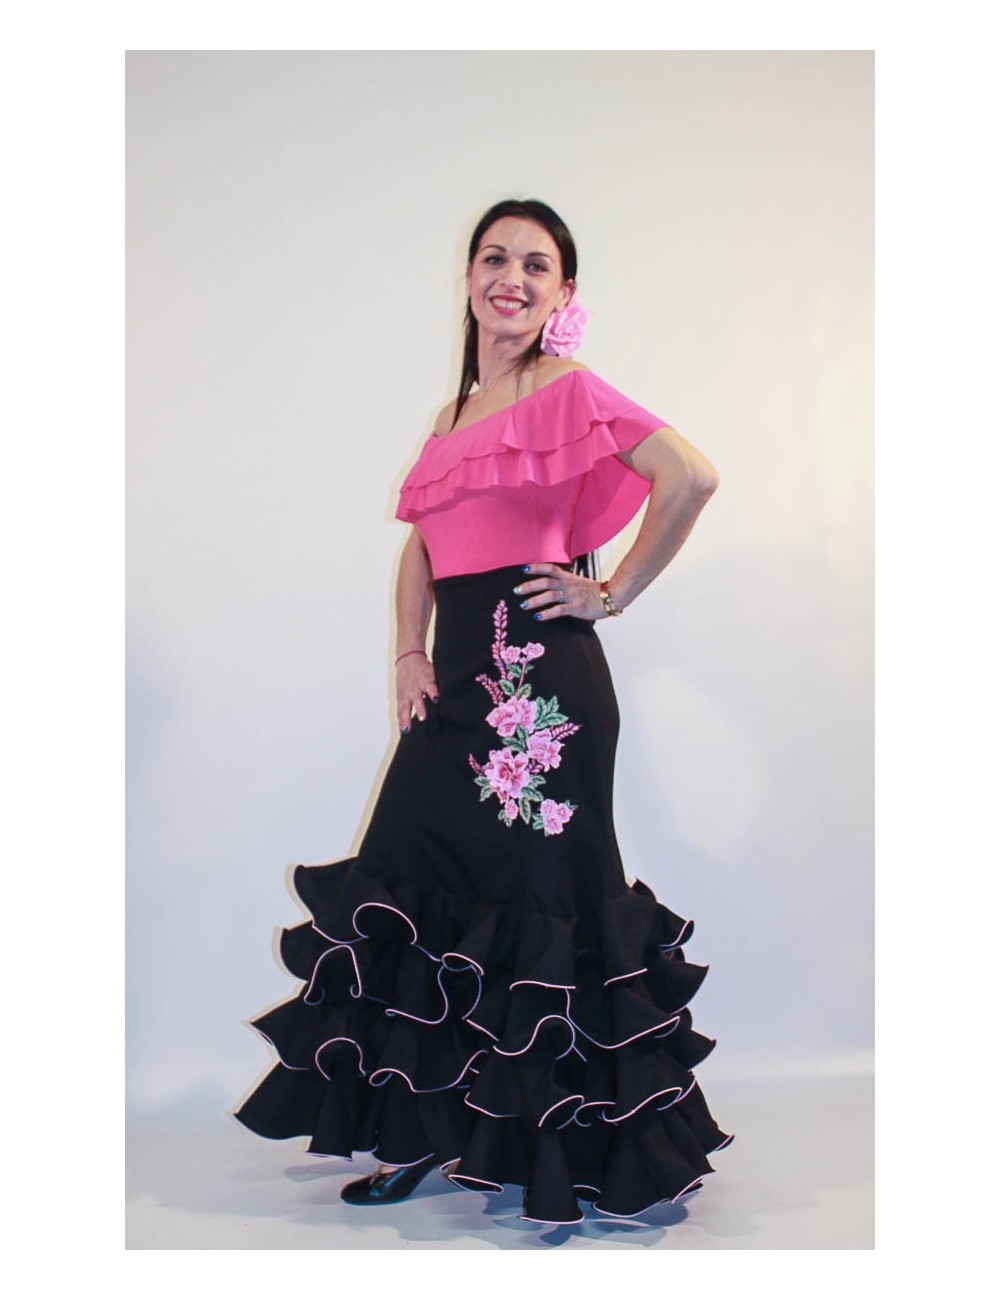 Jupe flamenco Cordou Brodée F